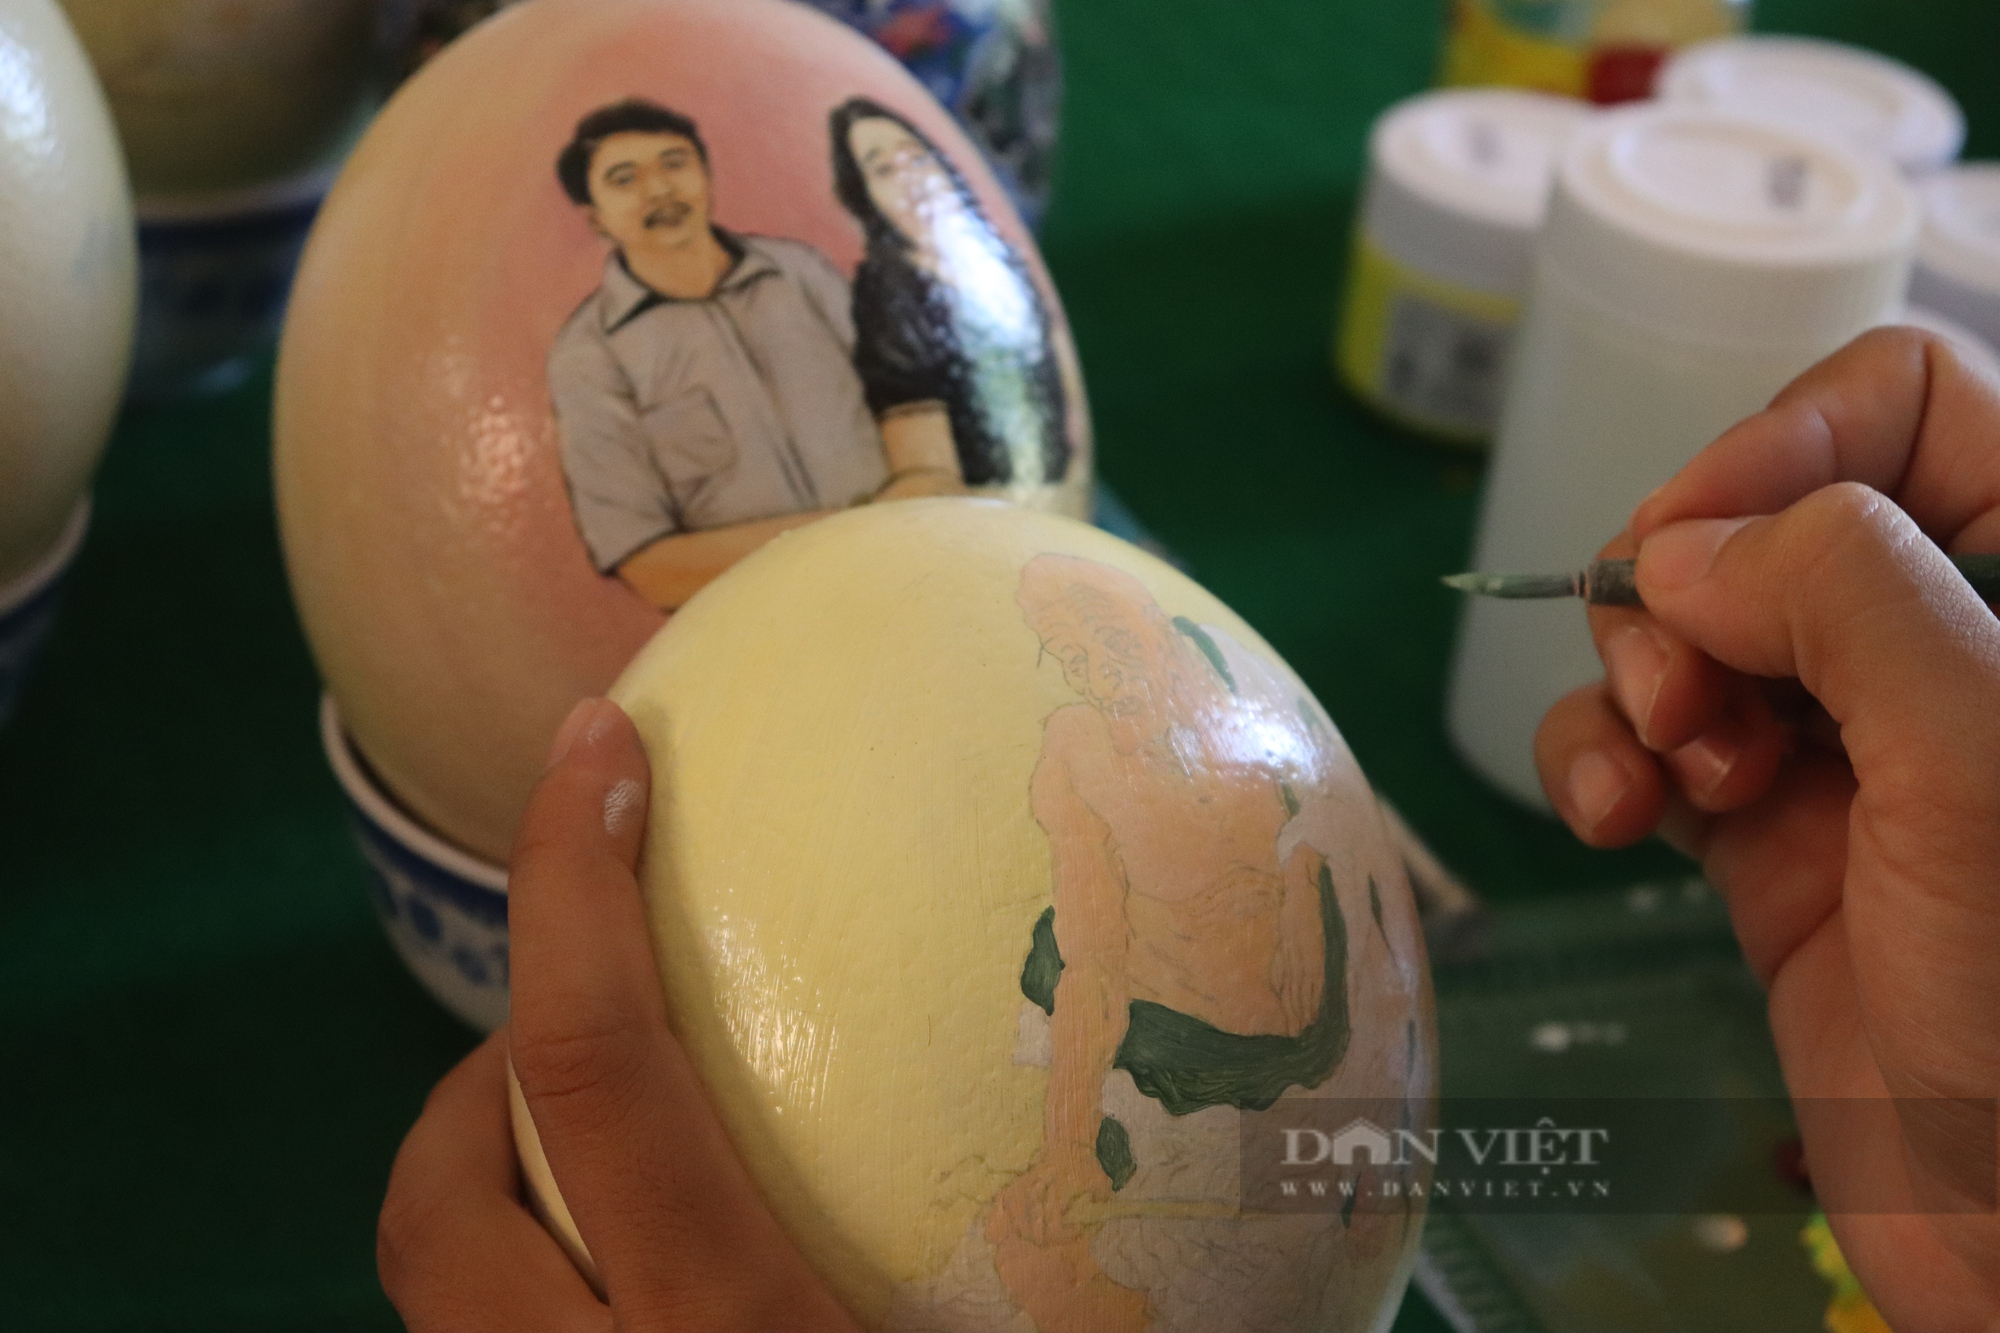 Hãy cùng chiêm ngưỡng hình ảnh trứng đà điểu to lớn làm say đắm các tín đồ yêu động vật! Với màu sắc độc đáo và hình dạng nổi bật, trứng đà điểu sẽ khiến bạn không thể rời mắt khỏi những chi tiết tinh xảo trên bề mặt trứng.